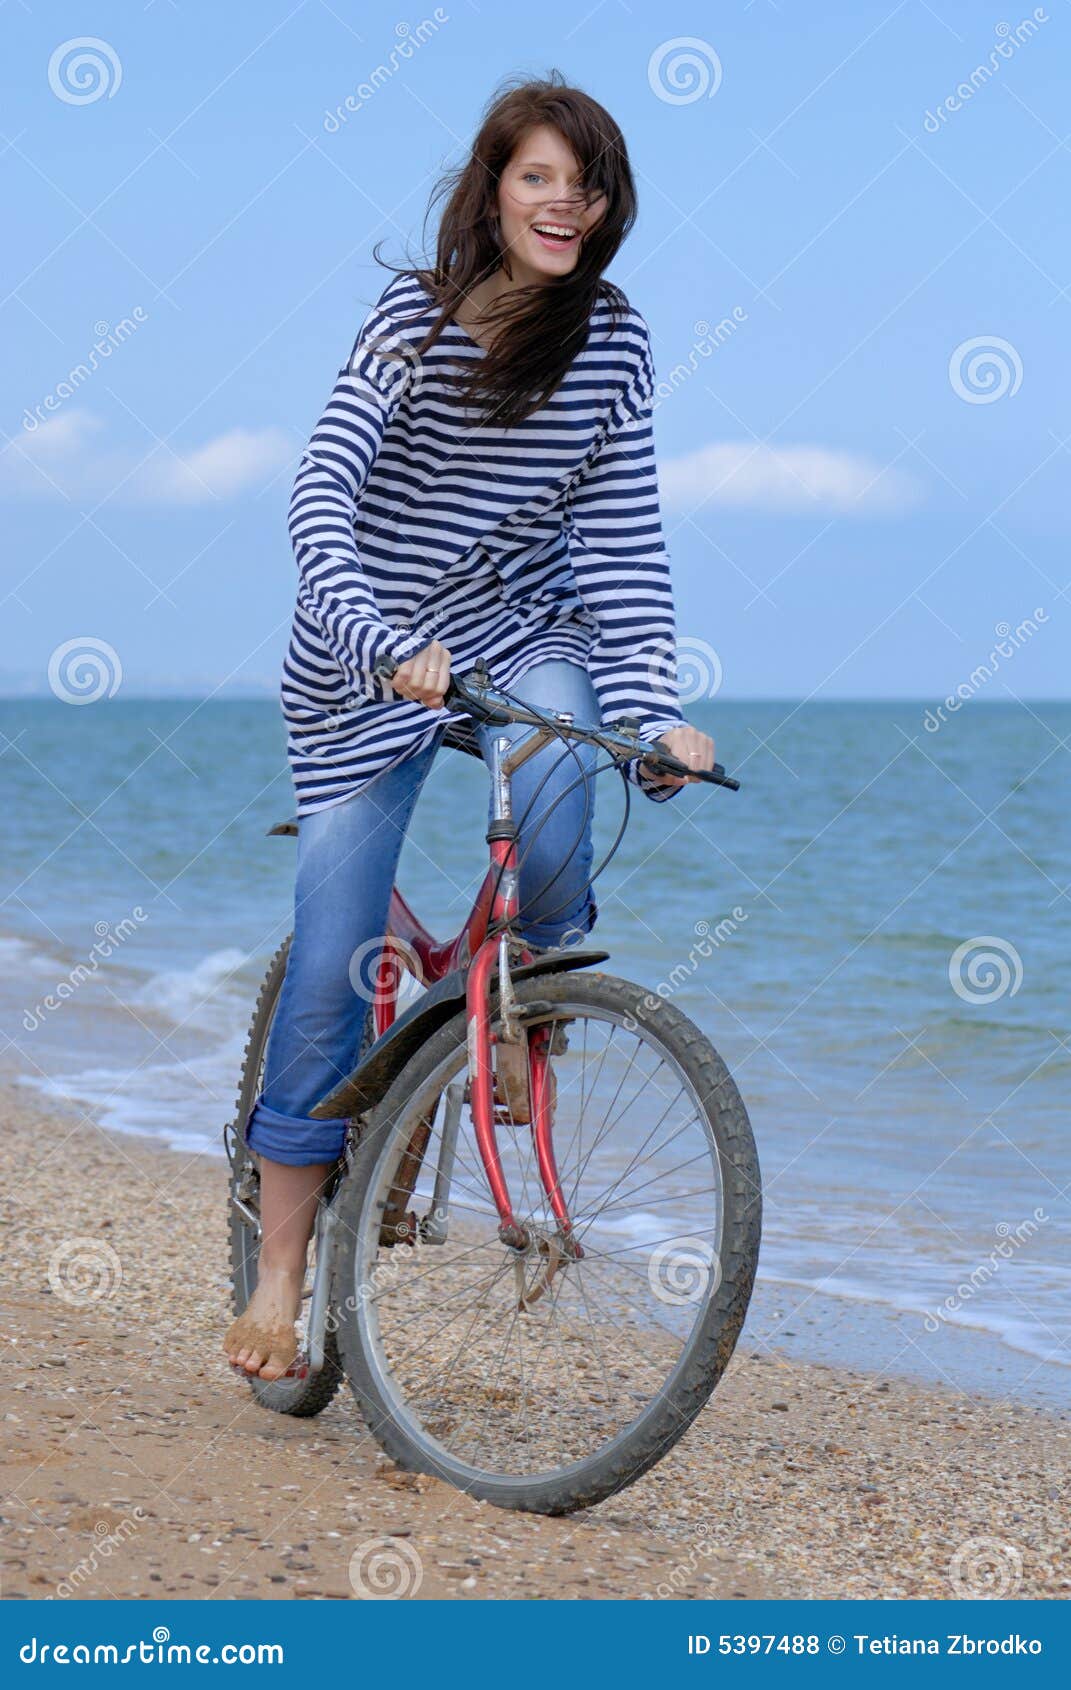 https://thumbs.dreamstime.com/z/cycling-girl-5397488.jpg